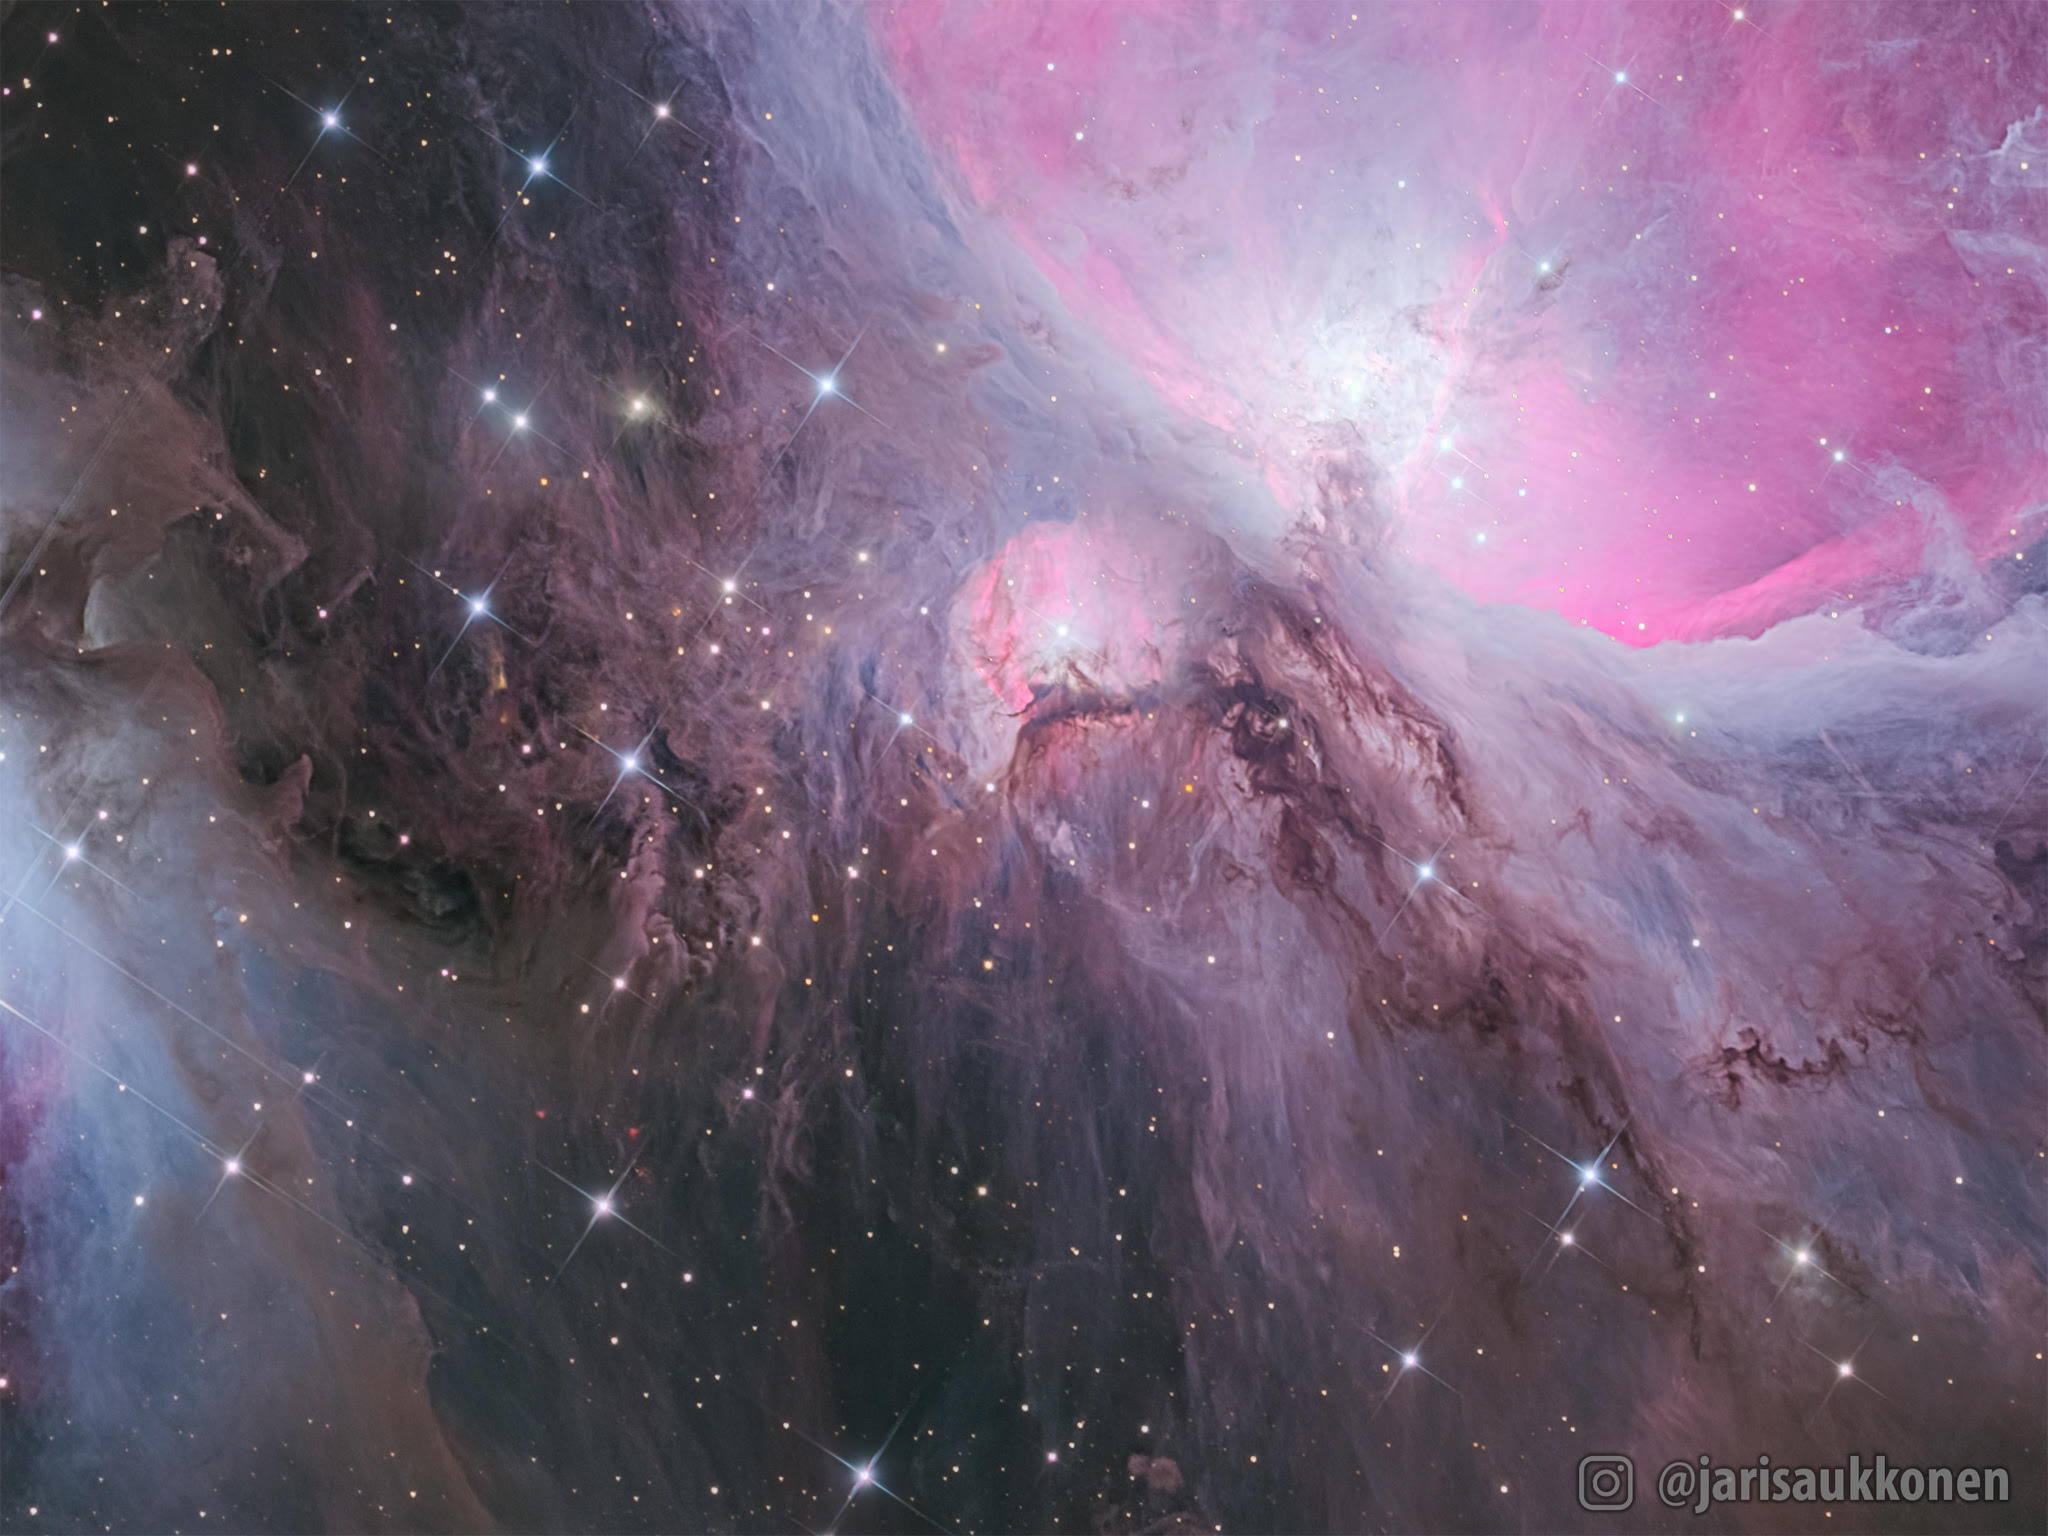 Астроном-любитель запечатлел удивительные потоки пыли в космосе (ФОТО)  - фото 2